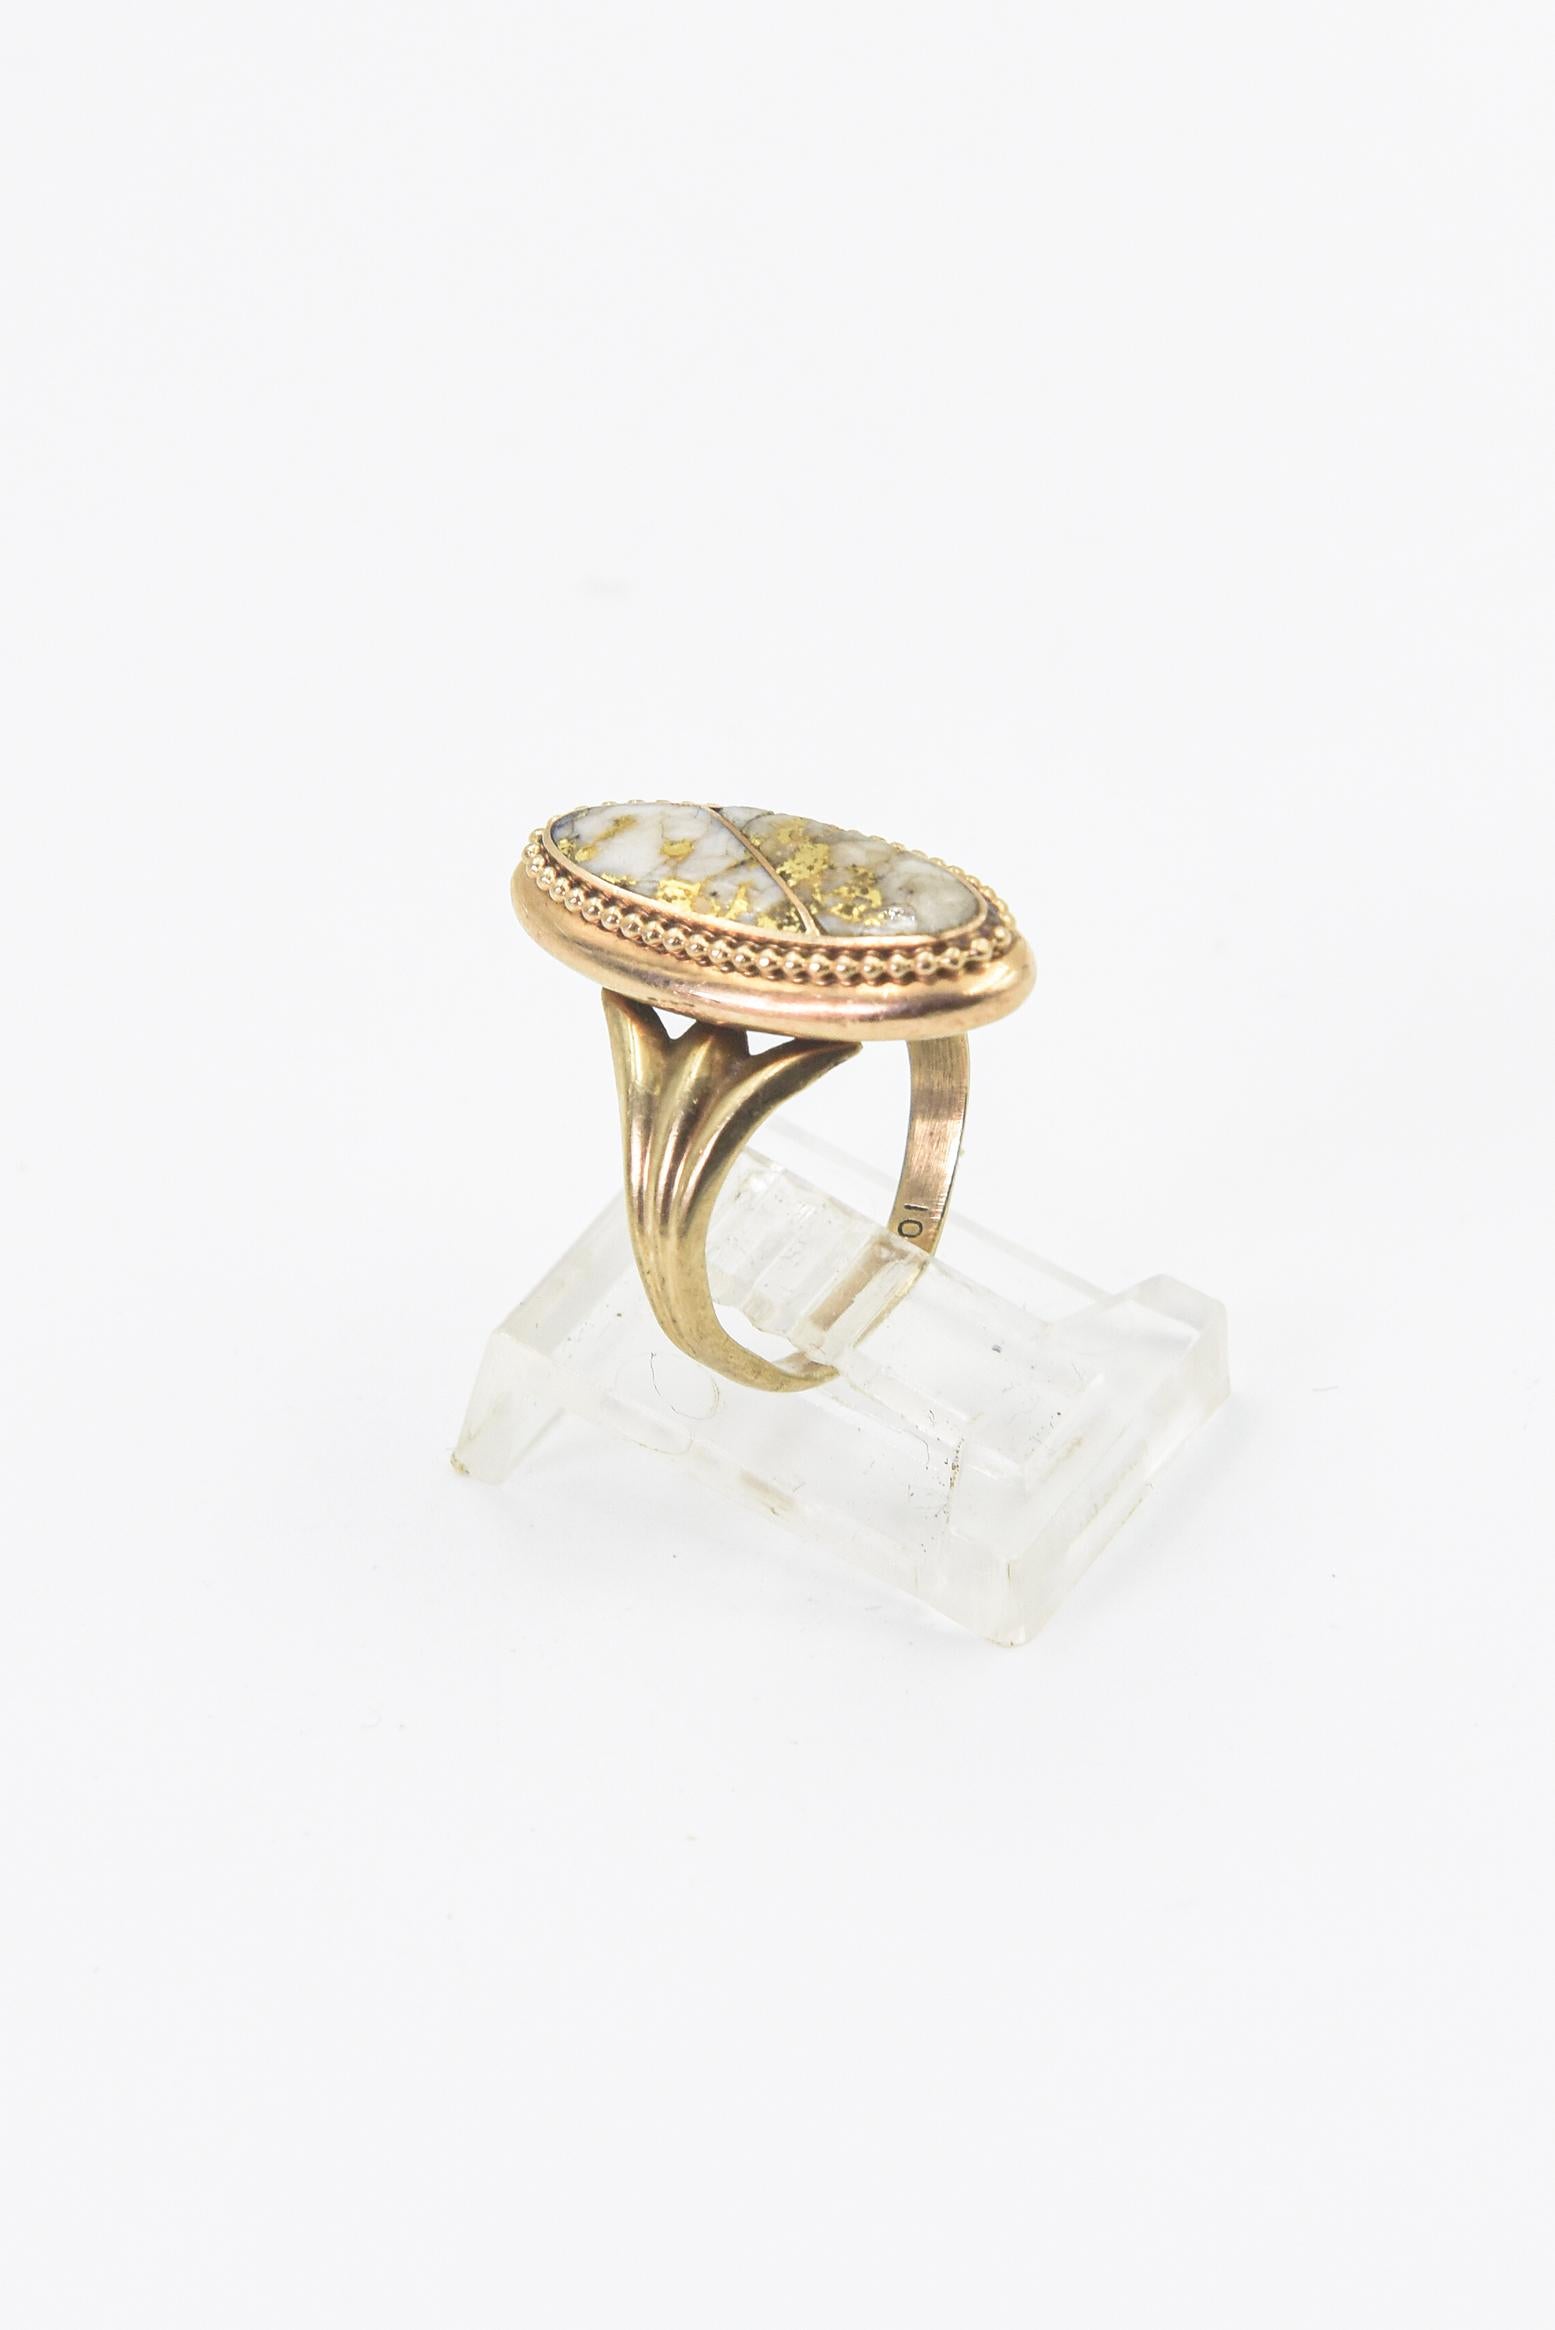 Rare Antique Gold Quartz Gold Ring For Sale 1